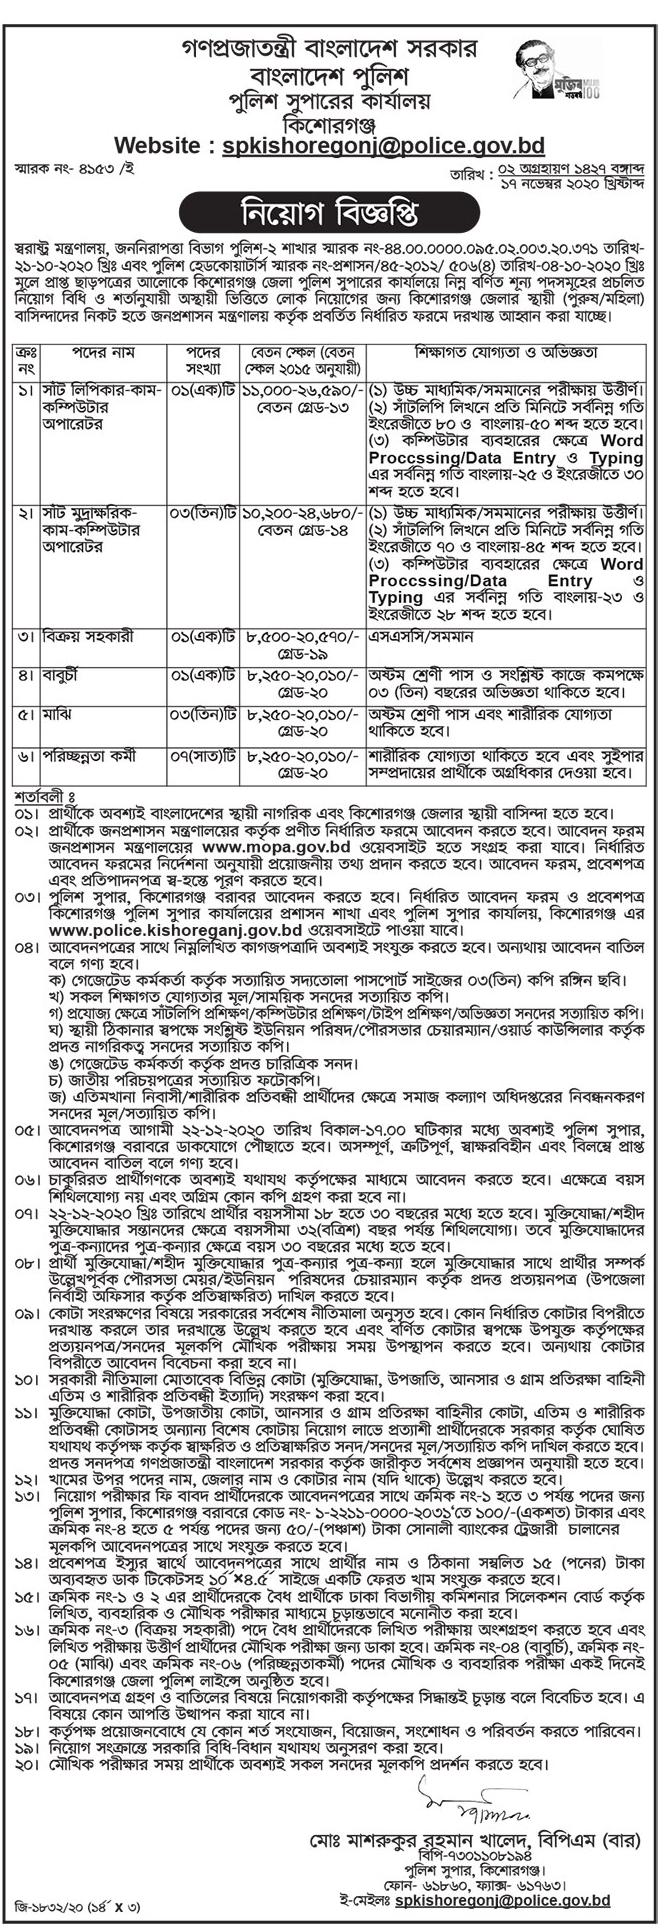 Govt job bd in Bangladesh Police Kishoregonj | bd jobs